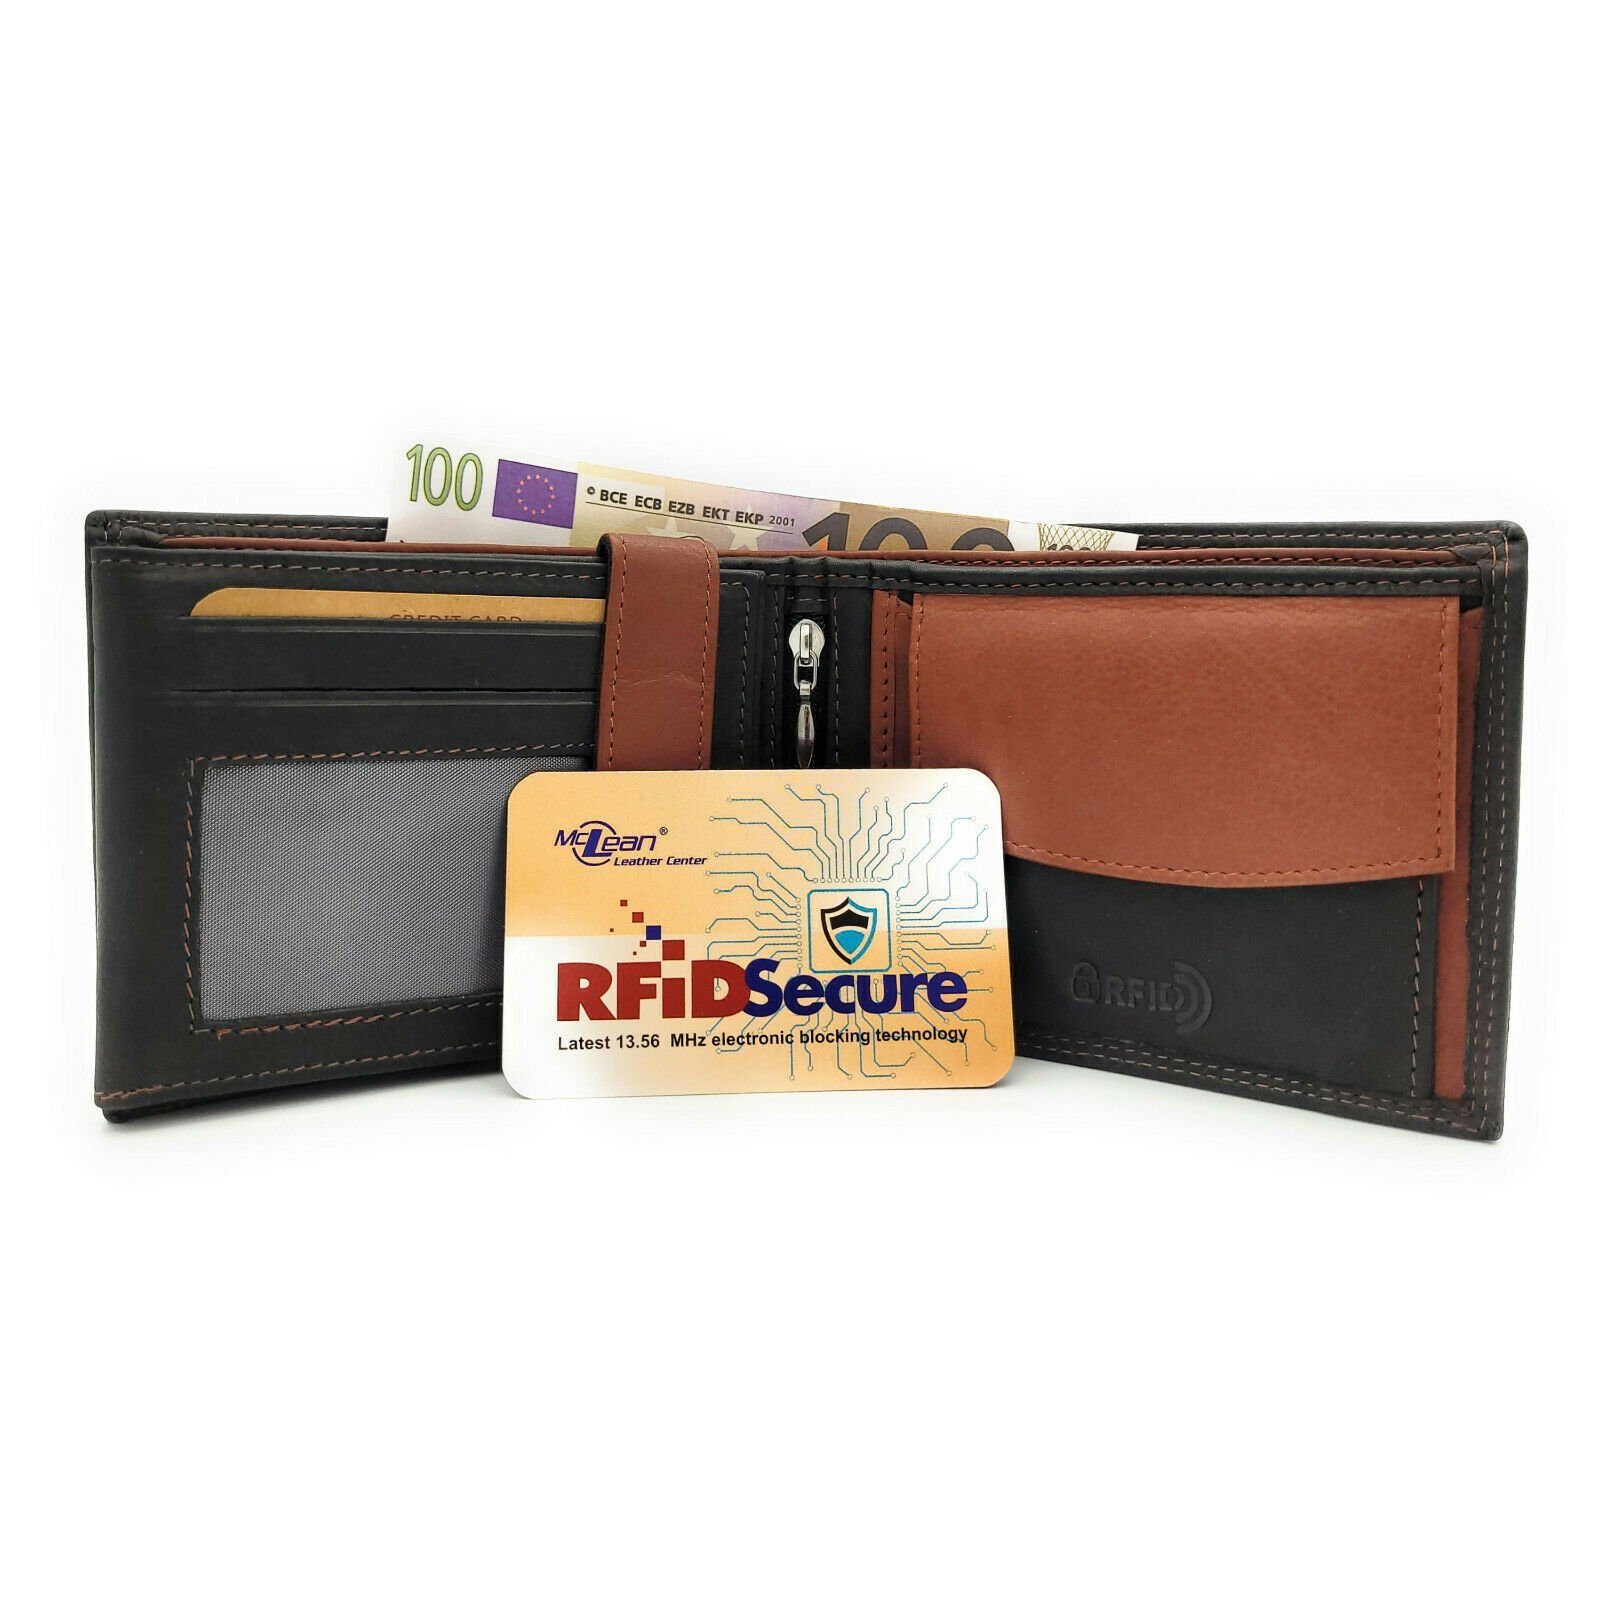 McLean Geldbörse echt Leder Herren Portemonnaie mit RFID Schutz, Innenriegel zur Sicherung der Karten, schwarz braun